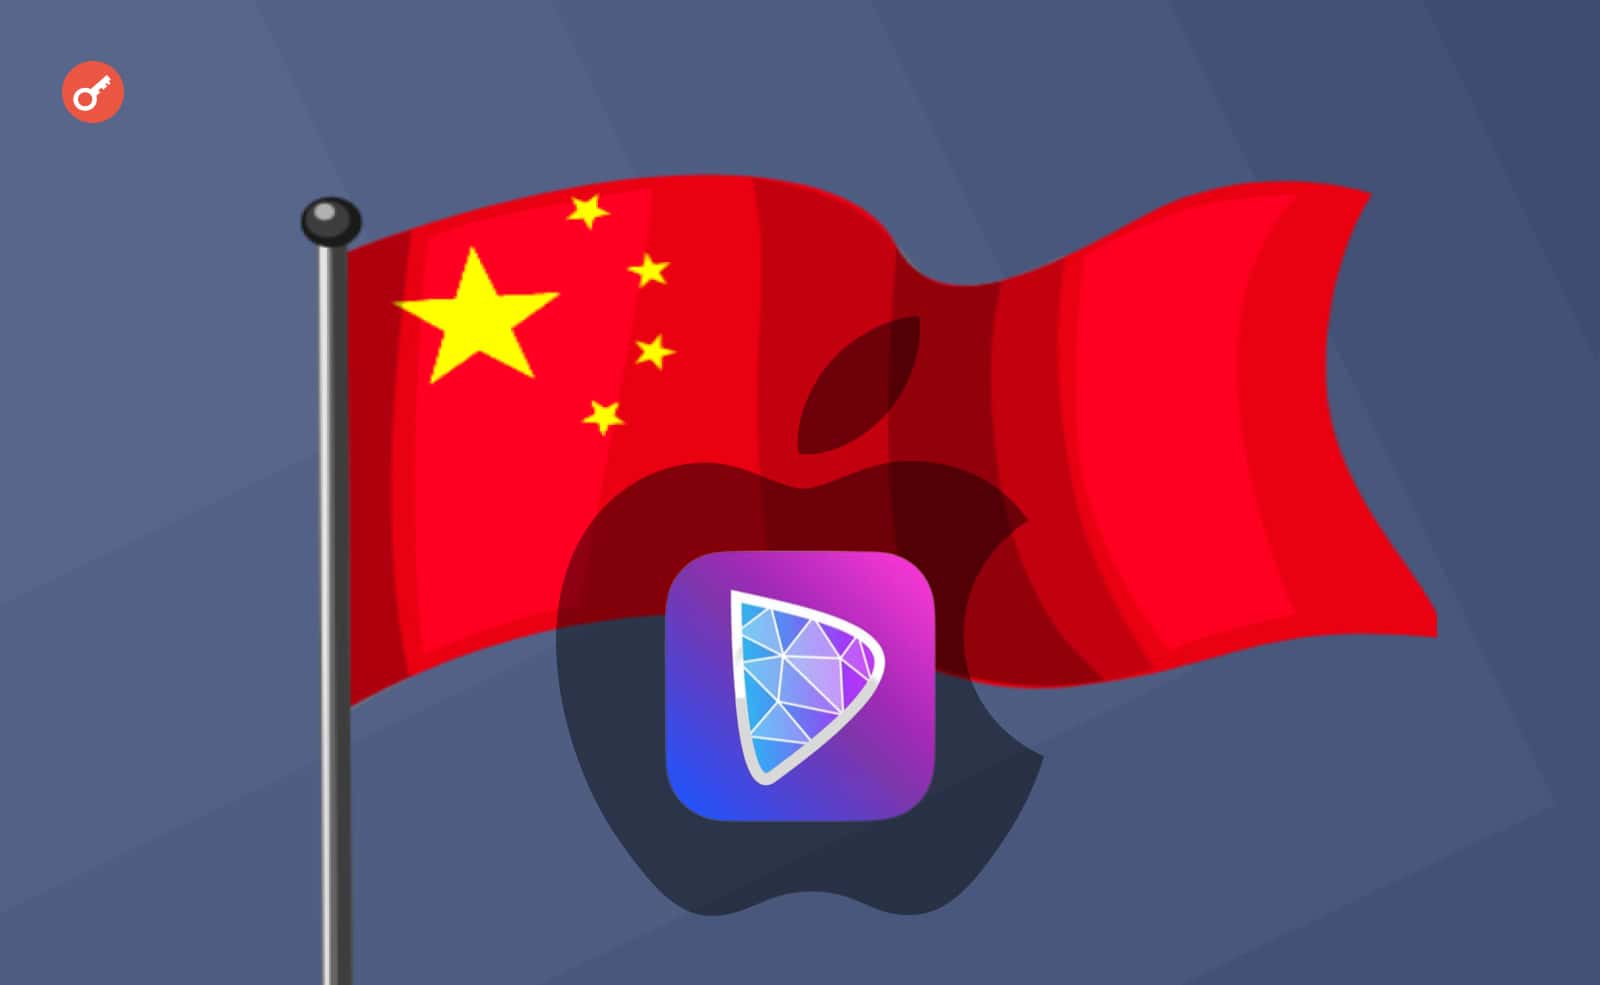 App Store заблокировал приложение Damus в Китае, сославшись на «запрещенный контент». Заглавный коллаж новости.